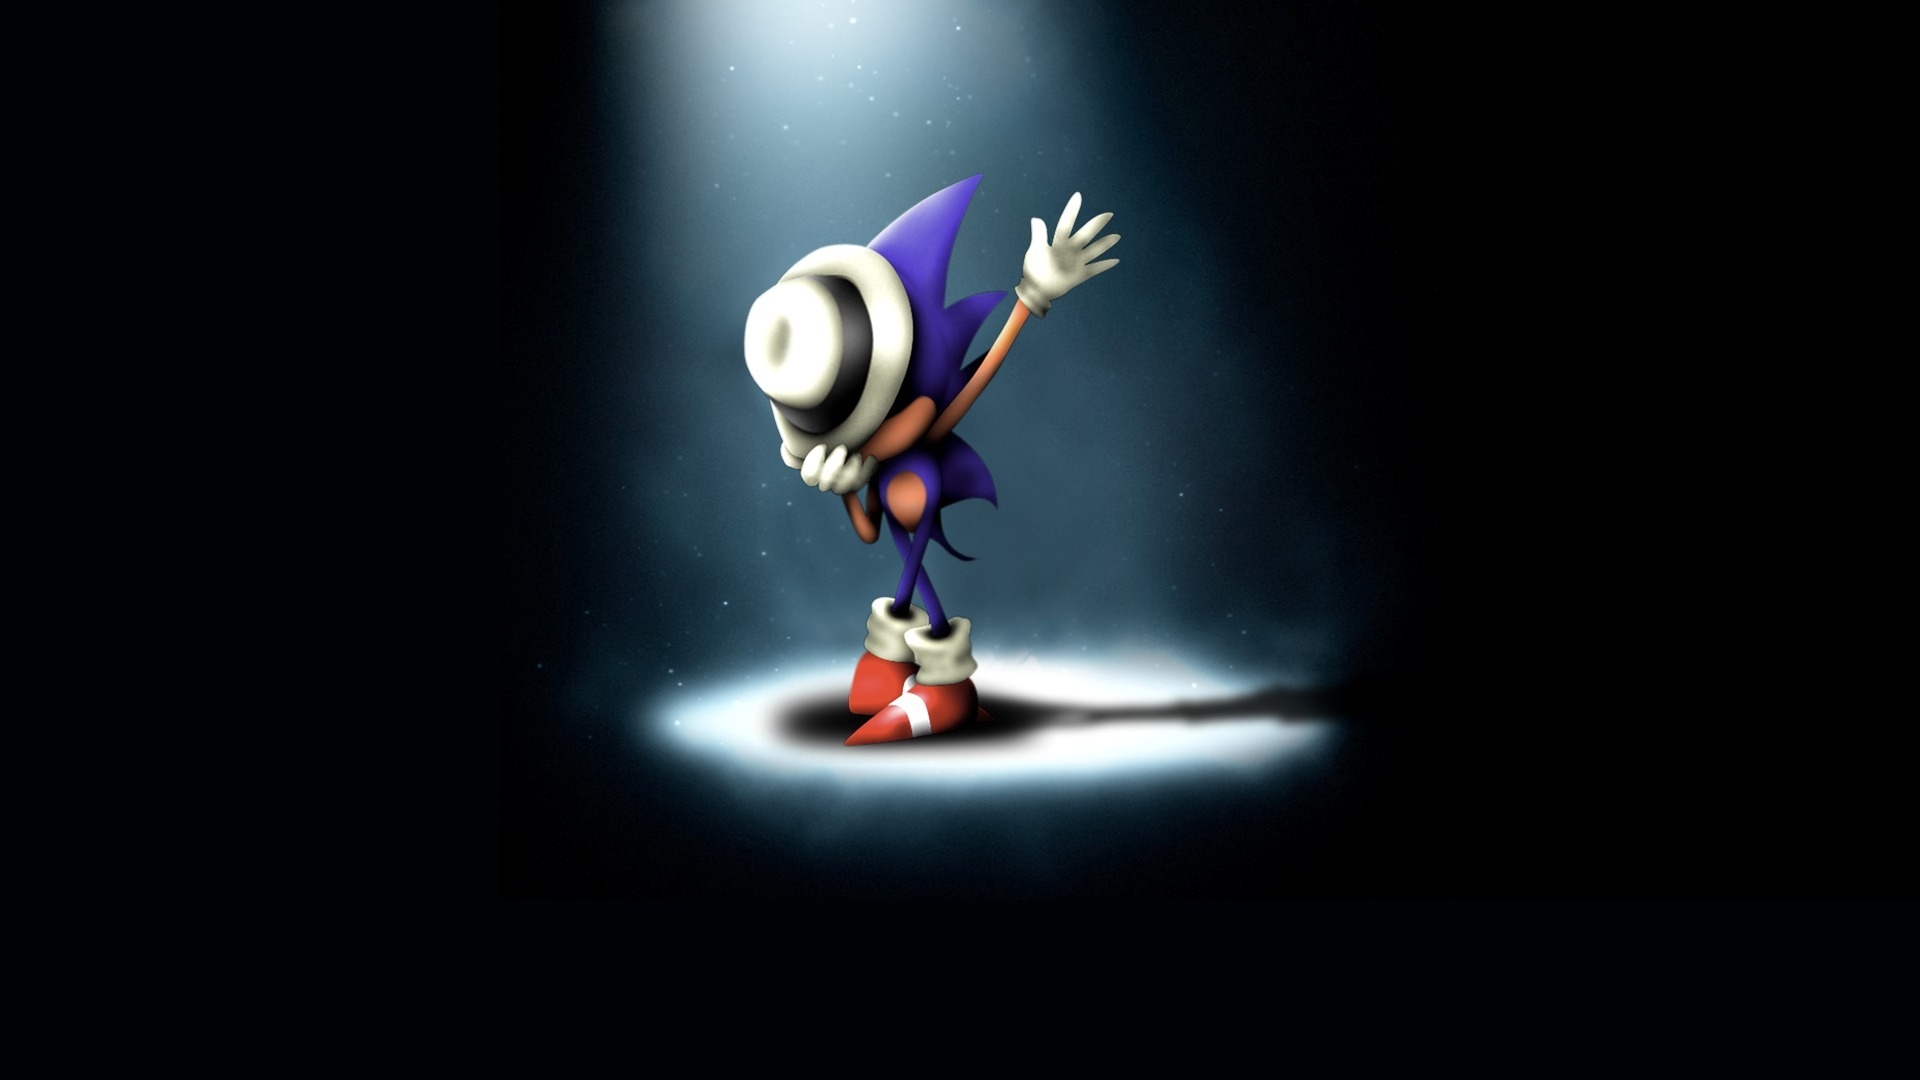 Sonic Hedgehog là một biểu tượng của trò chơi và của thế giới giải trí nói chung. Những hình ảnh đẹp mắt về Sonic Hedgehog sẽ giúp bạn tận hưởng toàn bộ cảm giác của trò chơi và tràn đầy năng lượng. Đừng để bỏ lỡ cơ hội để sở hữu những hình nền độc đáo này để gây ấn tượng với bạn bè của mình.